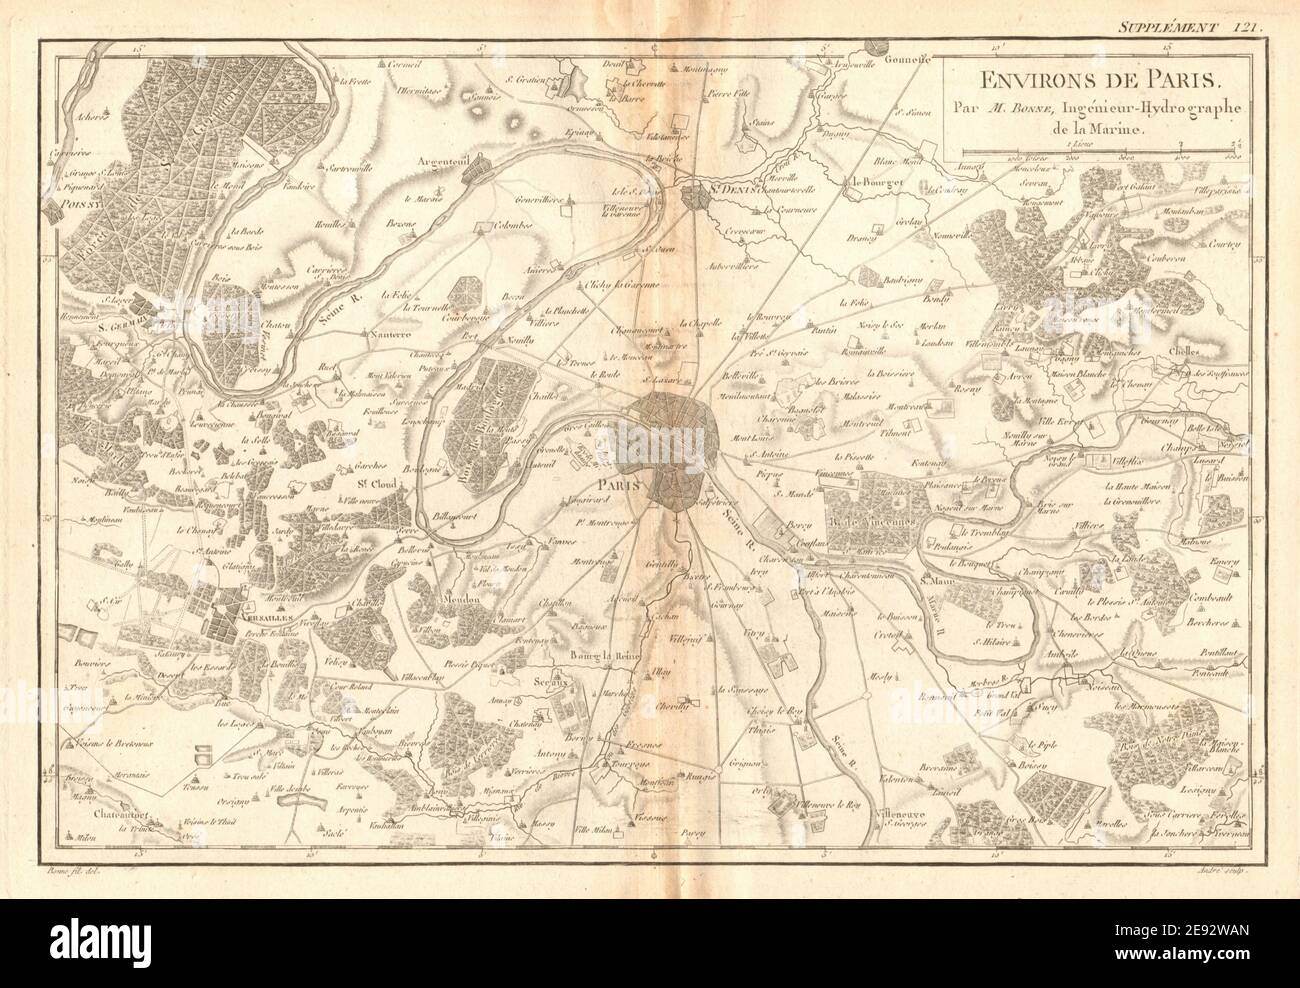 Environs de Paris. Paris et environs. BONNE 1788 carte ancienne plan carte Banque D'Images